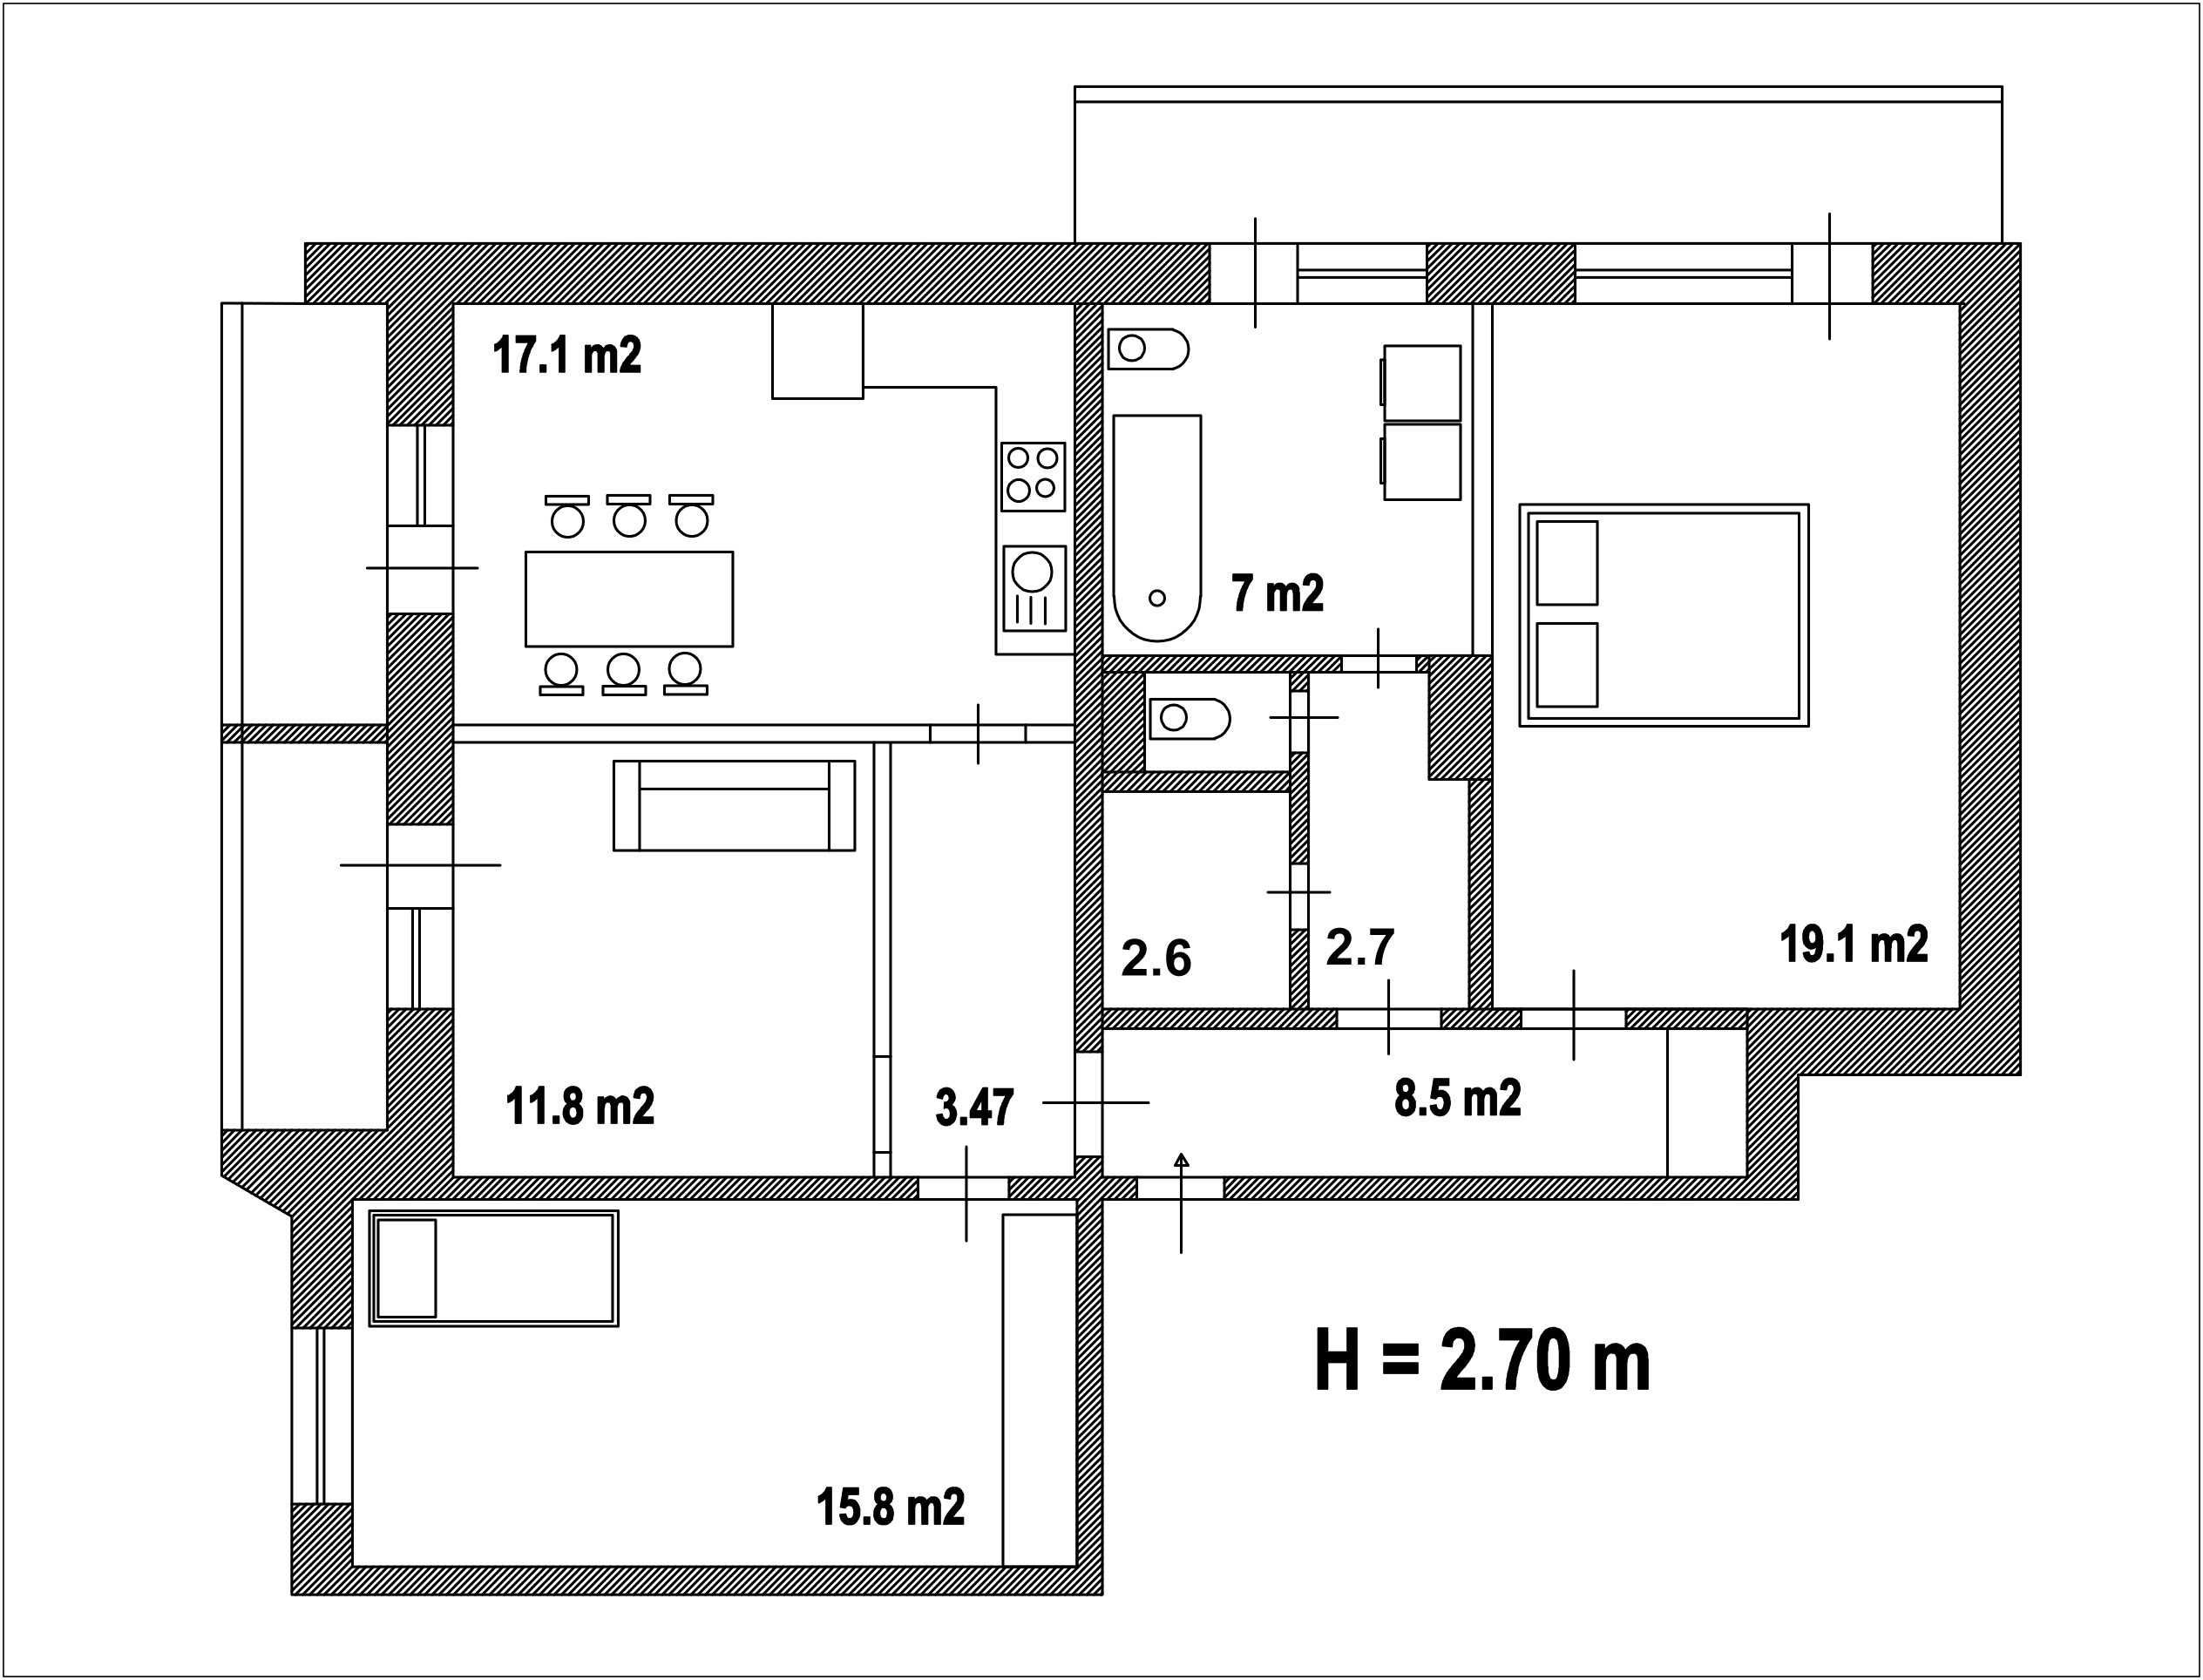 Продам 4х комнатную квартиру на Троещине 90 m2